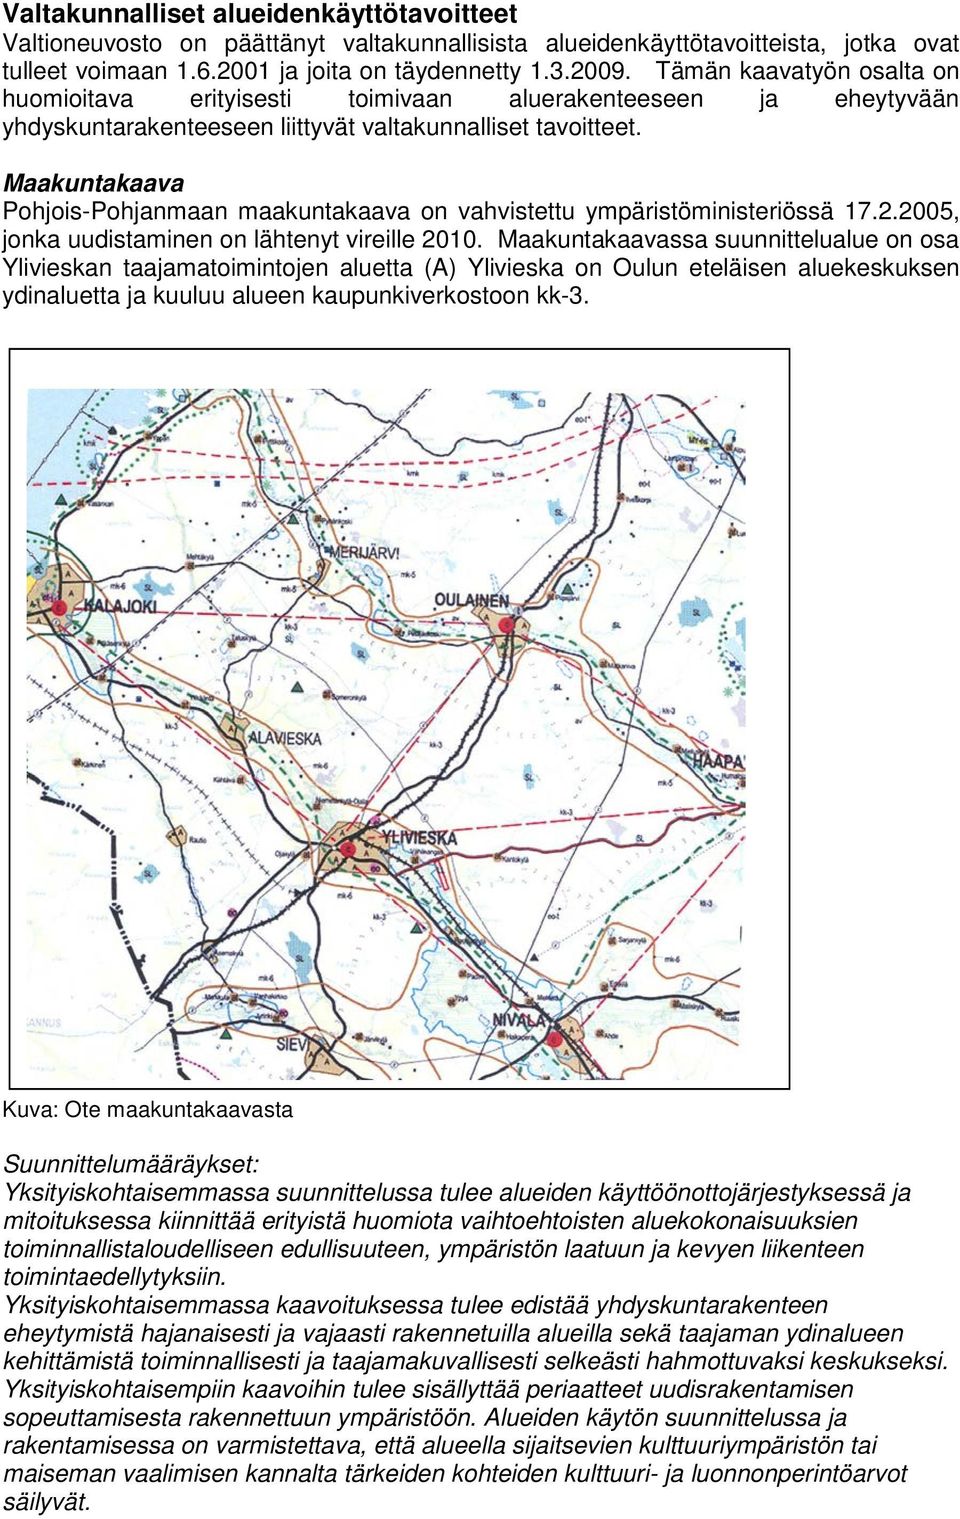 Maakuntakaava Pohjois-Pohjanmaan maakuntakaava on vahvistettu ympäristöministeriössä 17.2.2005, jonka uudistaminen on lähtenyt vireille 2010.